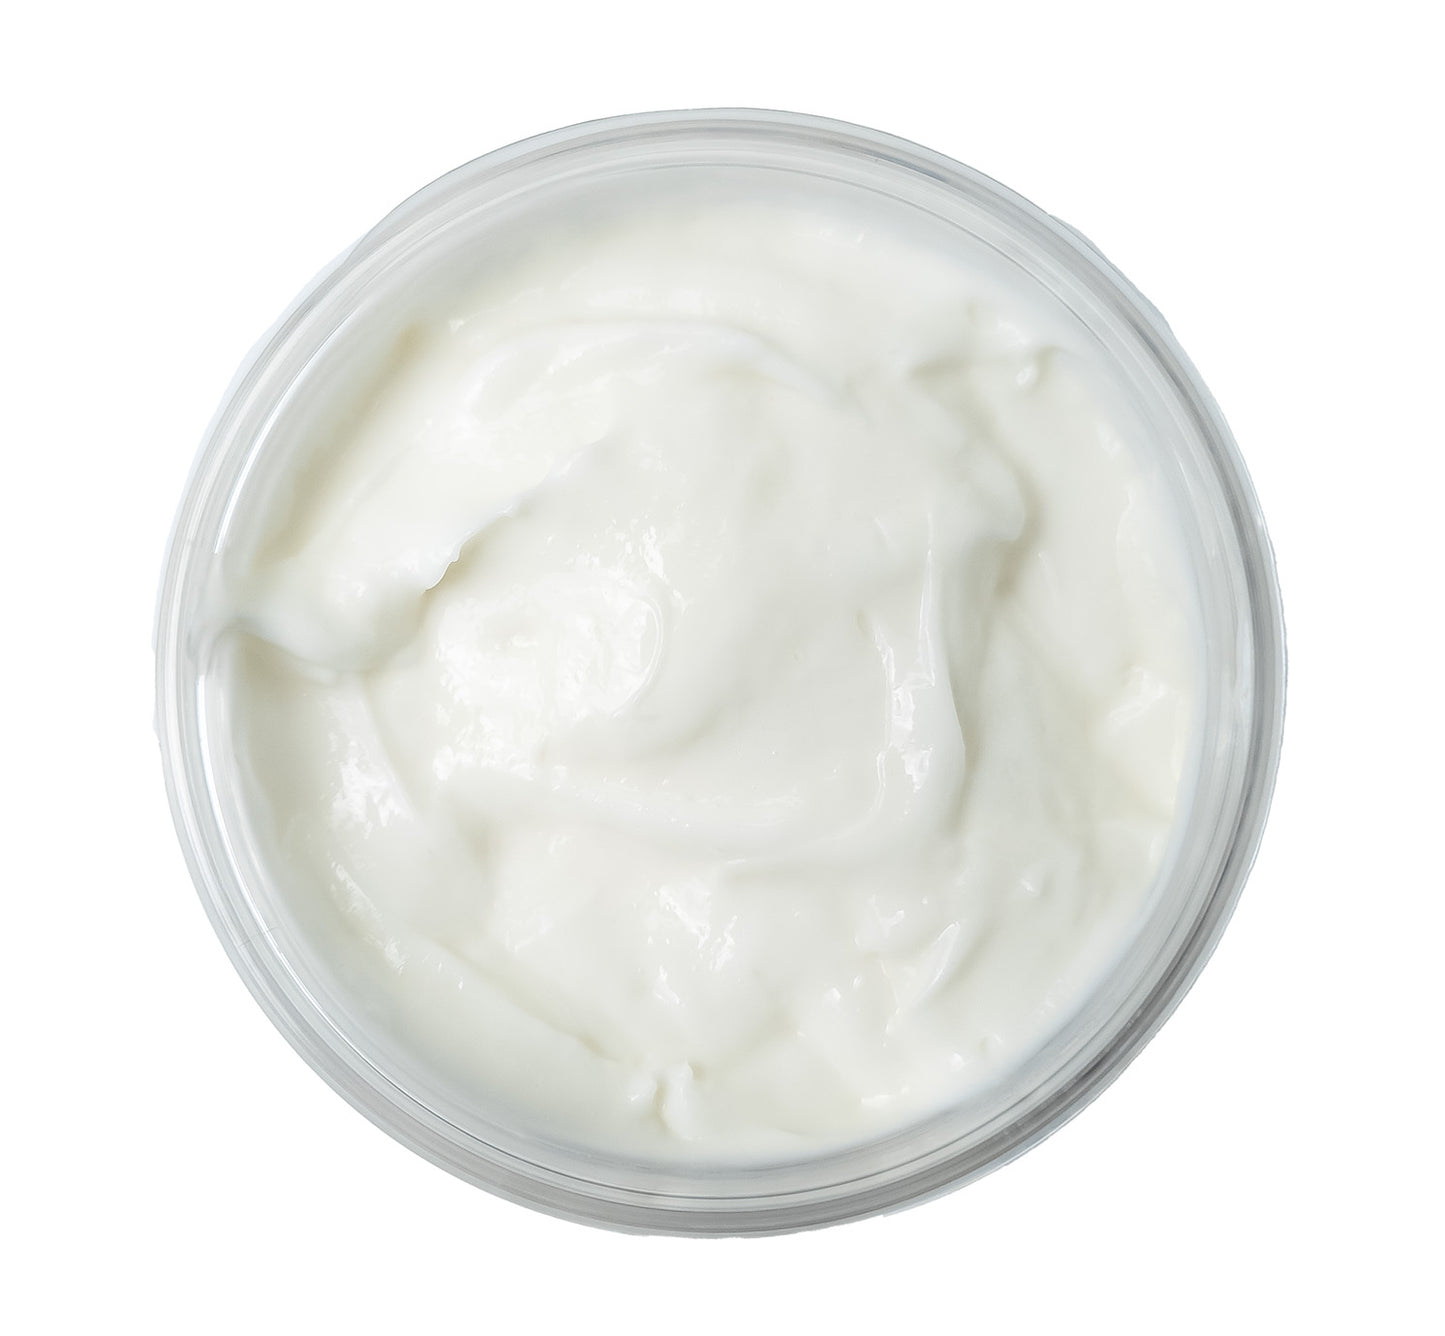 Fragrance Free Goat Milk Body Butter Cream for Sensitive Skin